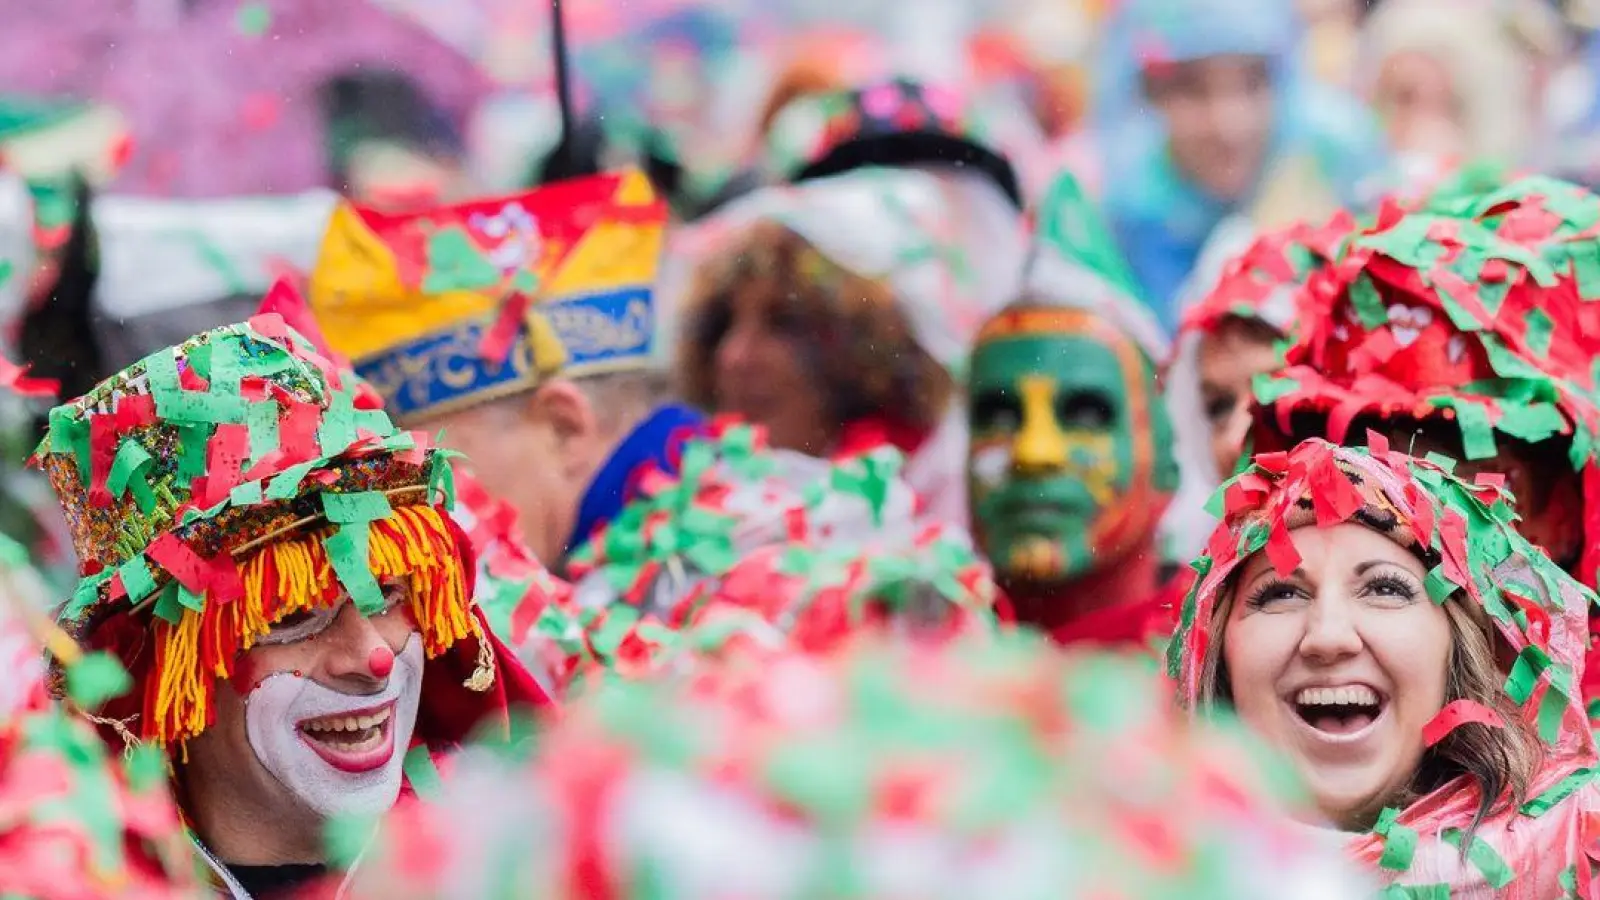 Karnevalisten sind komplett mit nassem Konfetti bedeckt und feiern die Eröffnung des Straßenkarnevals in Köln. (Foto: Rolf Vennenbernd/dpa)